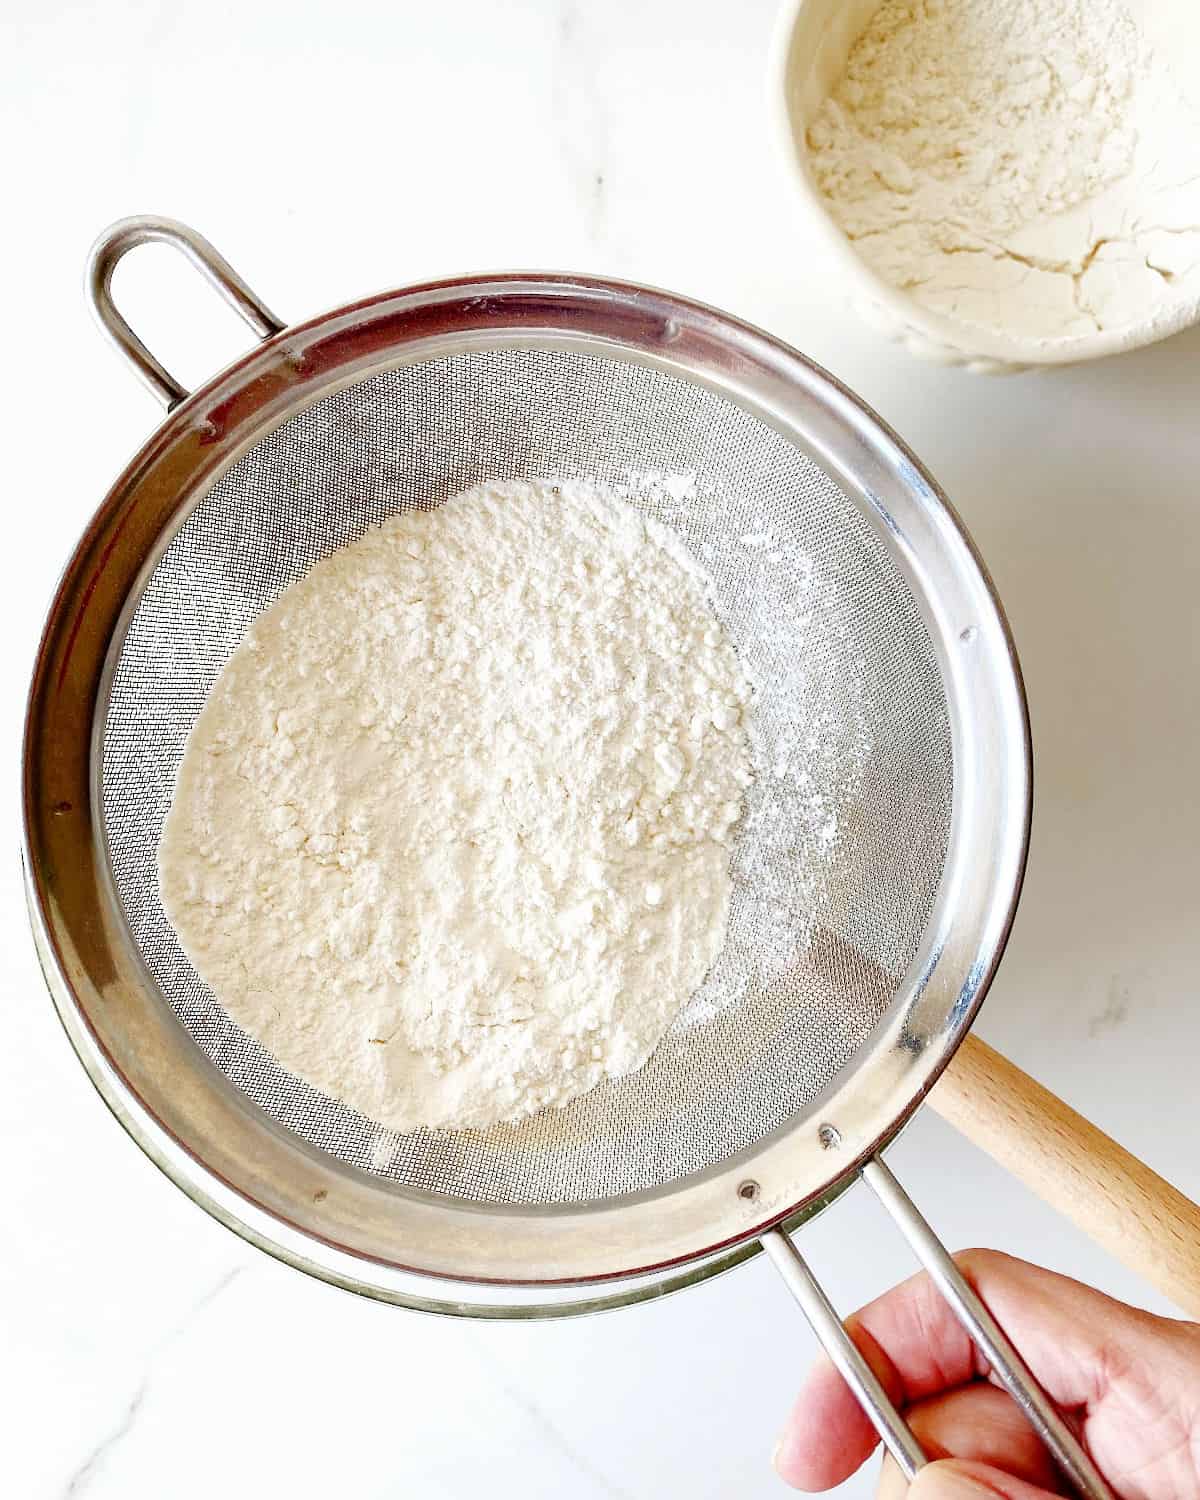 Sifting flour mixture. White surface, white bowl with flour. 